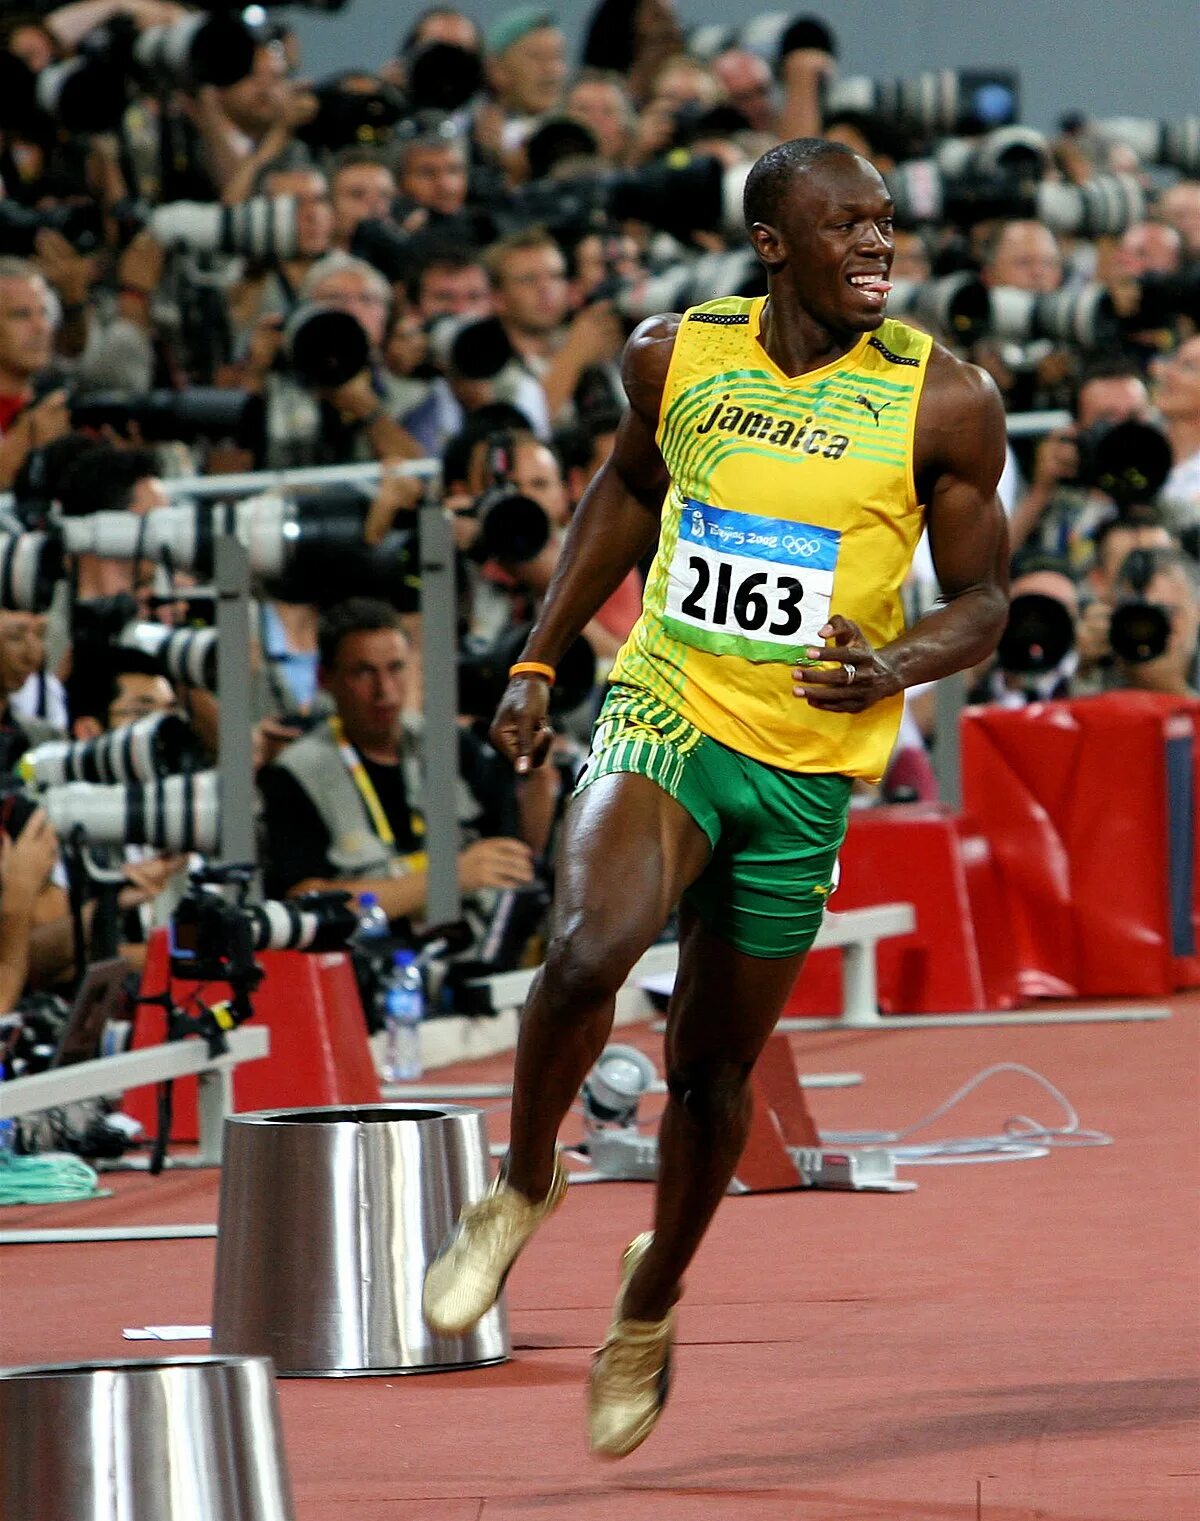 Победитель первых олимпийских игр по бегу. Усейн болт 2008. Усейн болт Пекин 2008. Усейн болт 100. Усейн болт Олимпийский рекорд на 100 м.